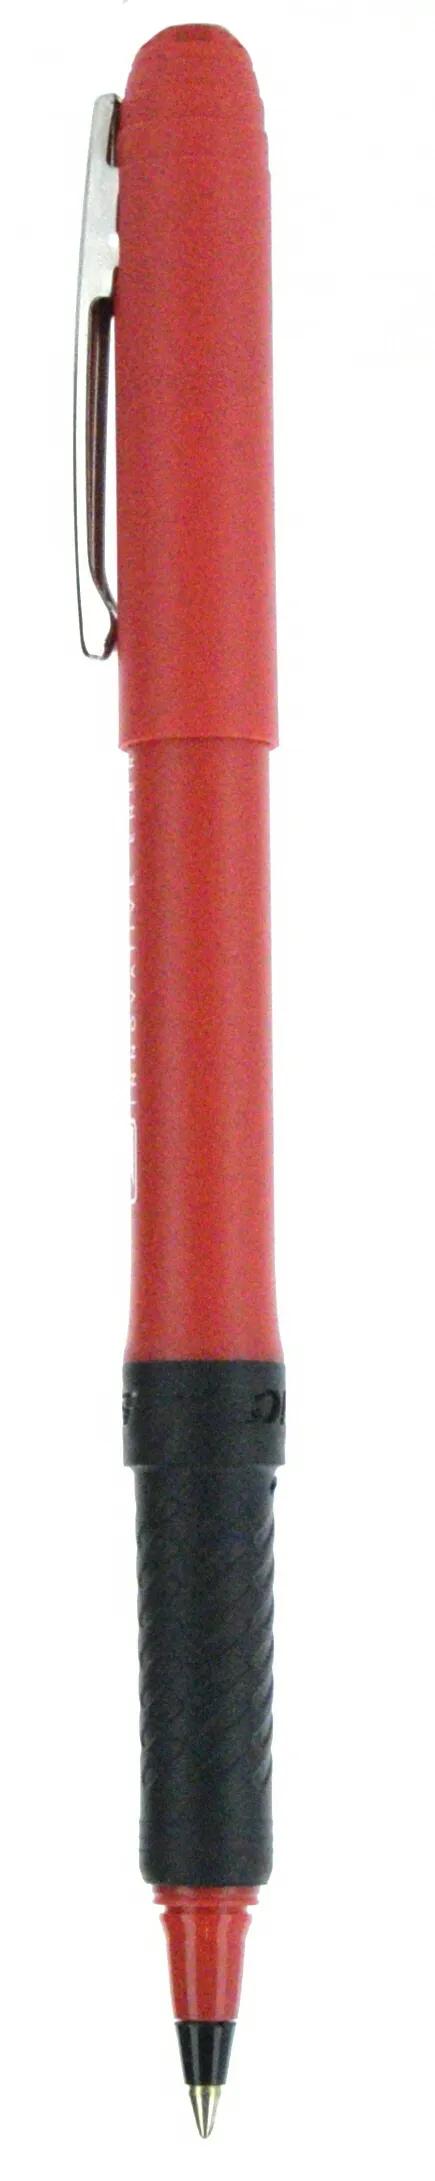 BIC® Grip Roller Pen 125 of 147